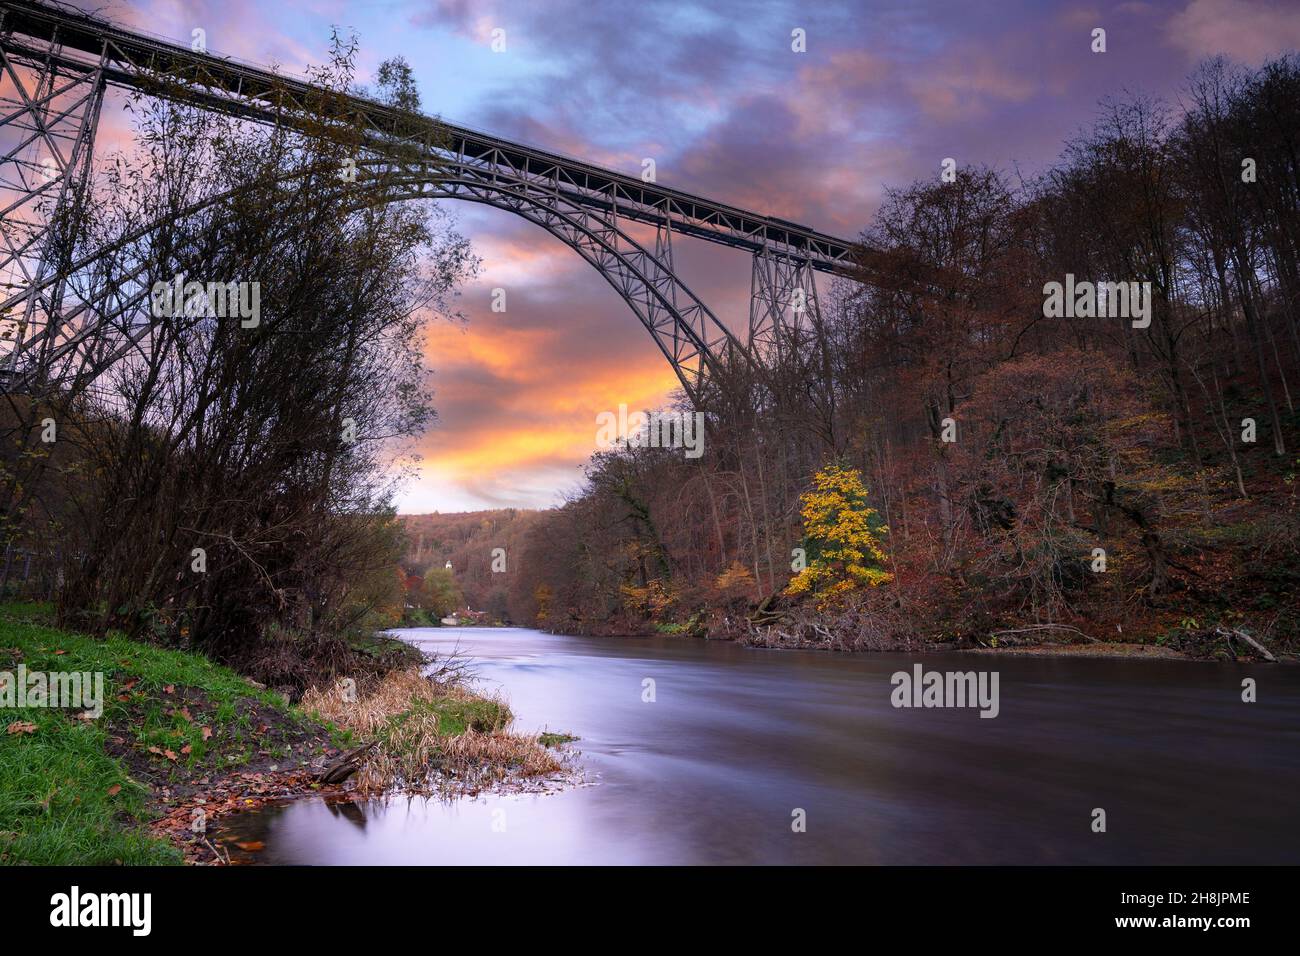 Panoramic image of landmark Mungstener Bridge at sunset, Bergisches Land, Solingen, Germany Stock Photo